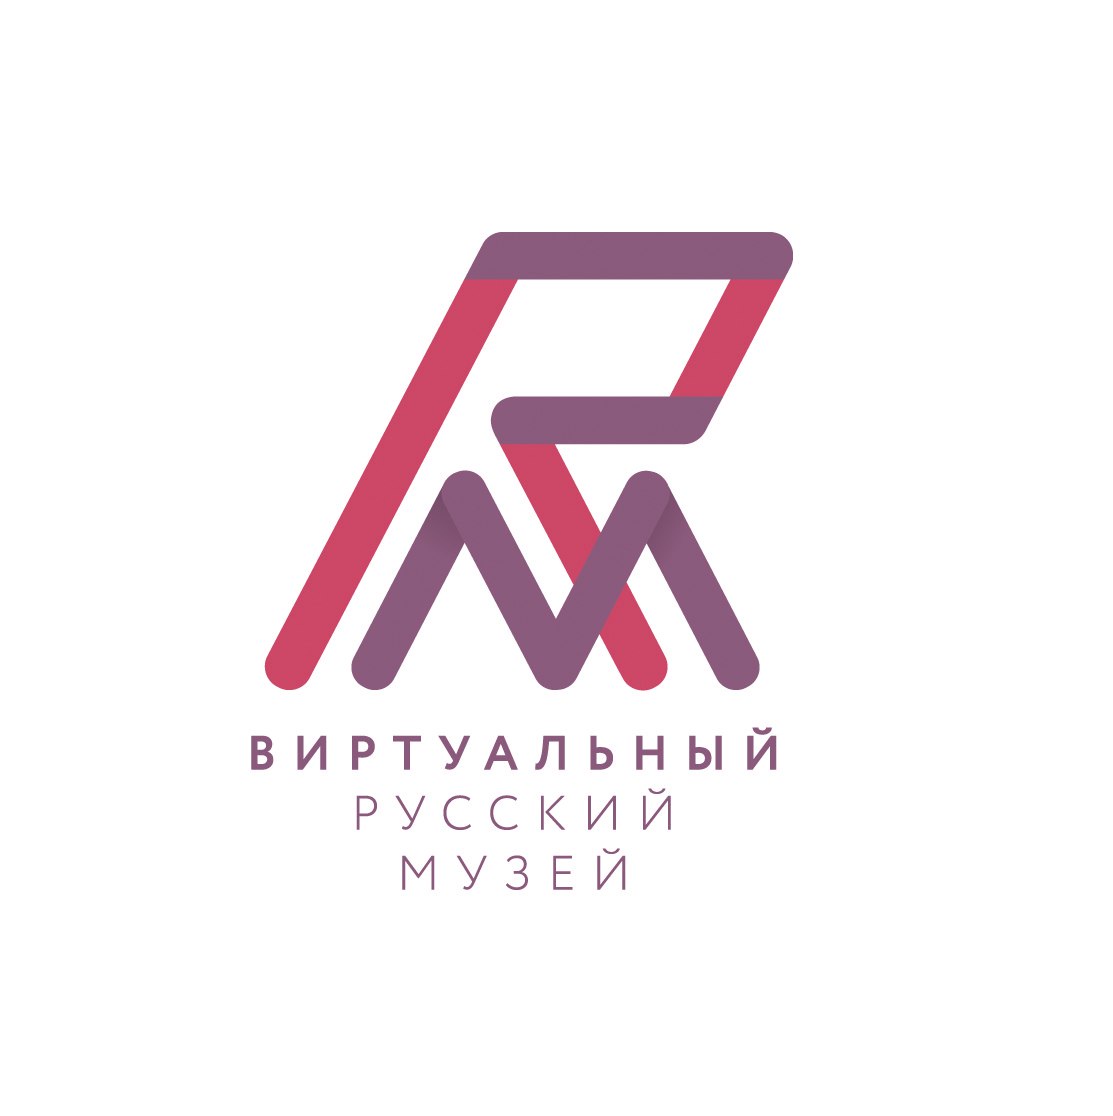 Центр мультимедиа. Виртуальный Русский музей